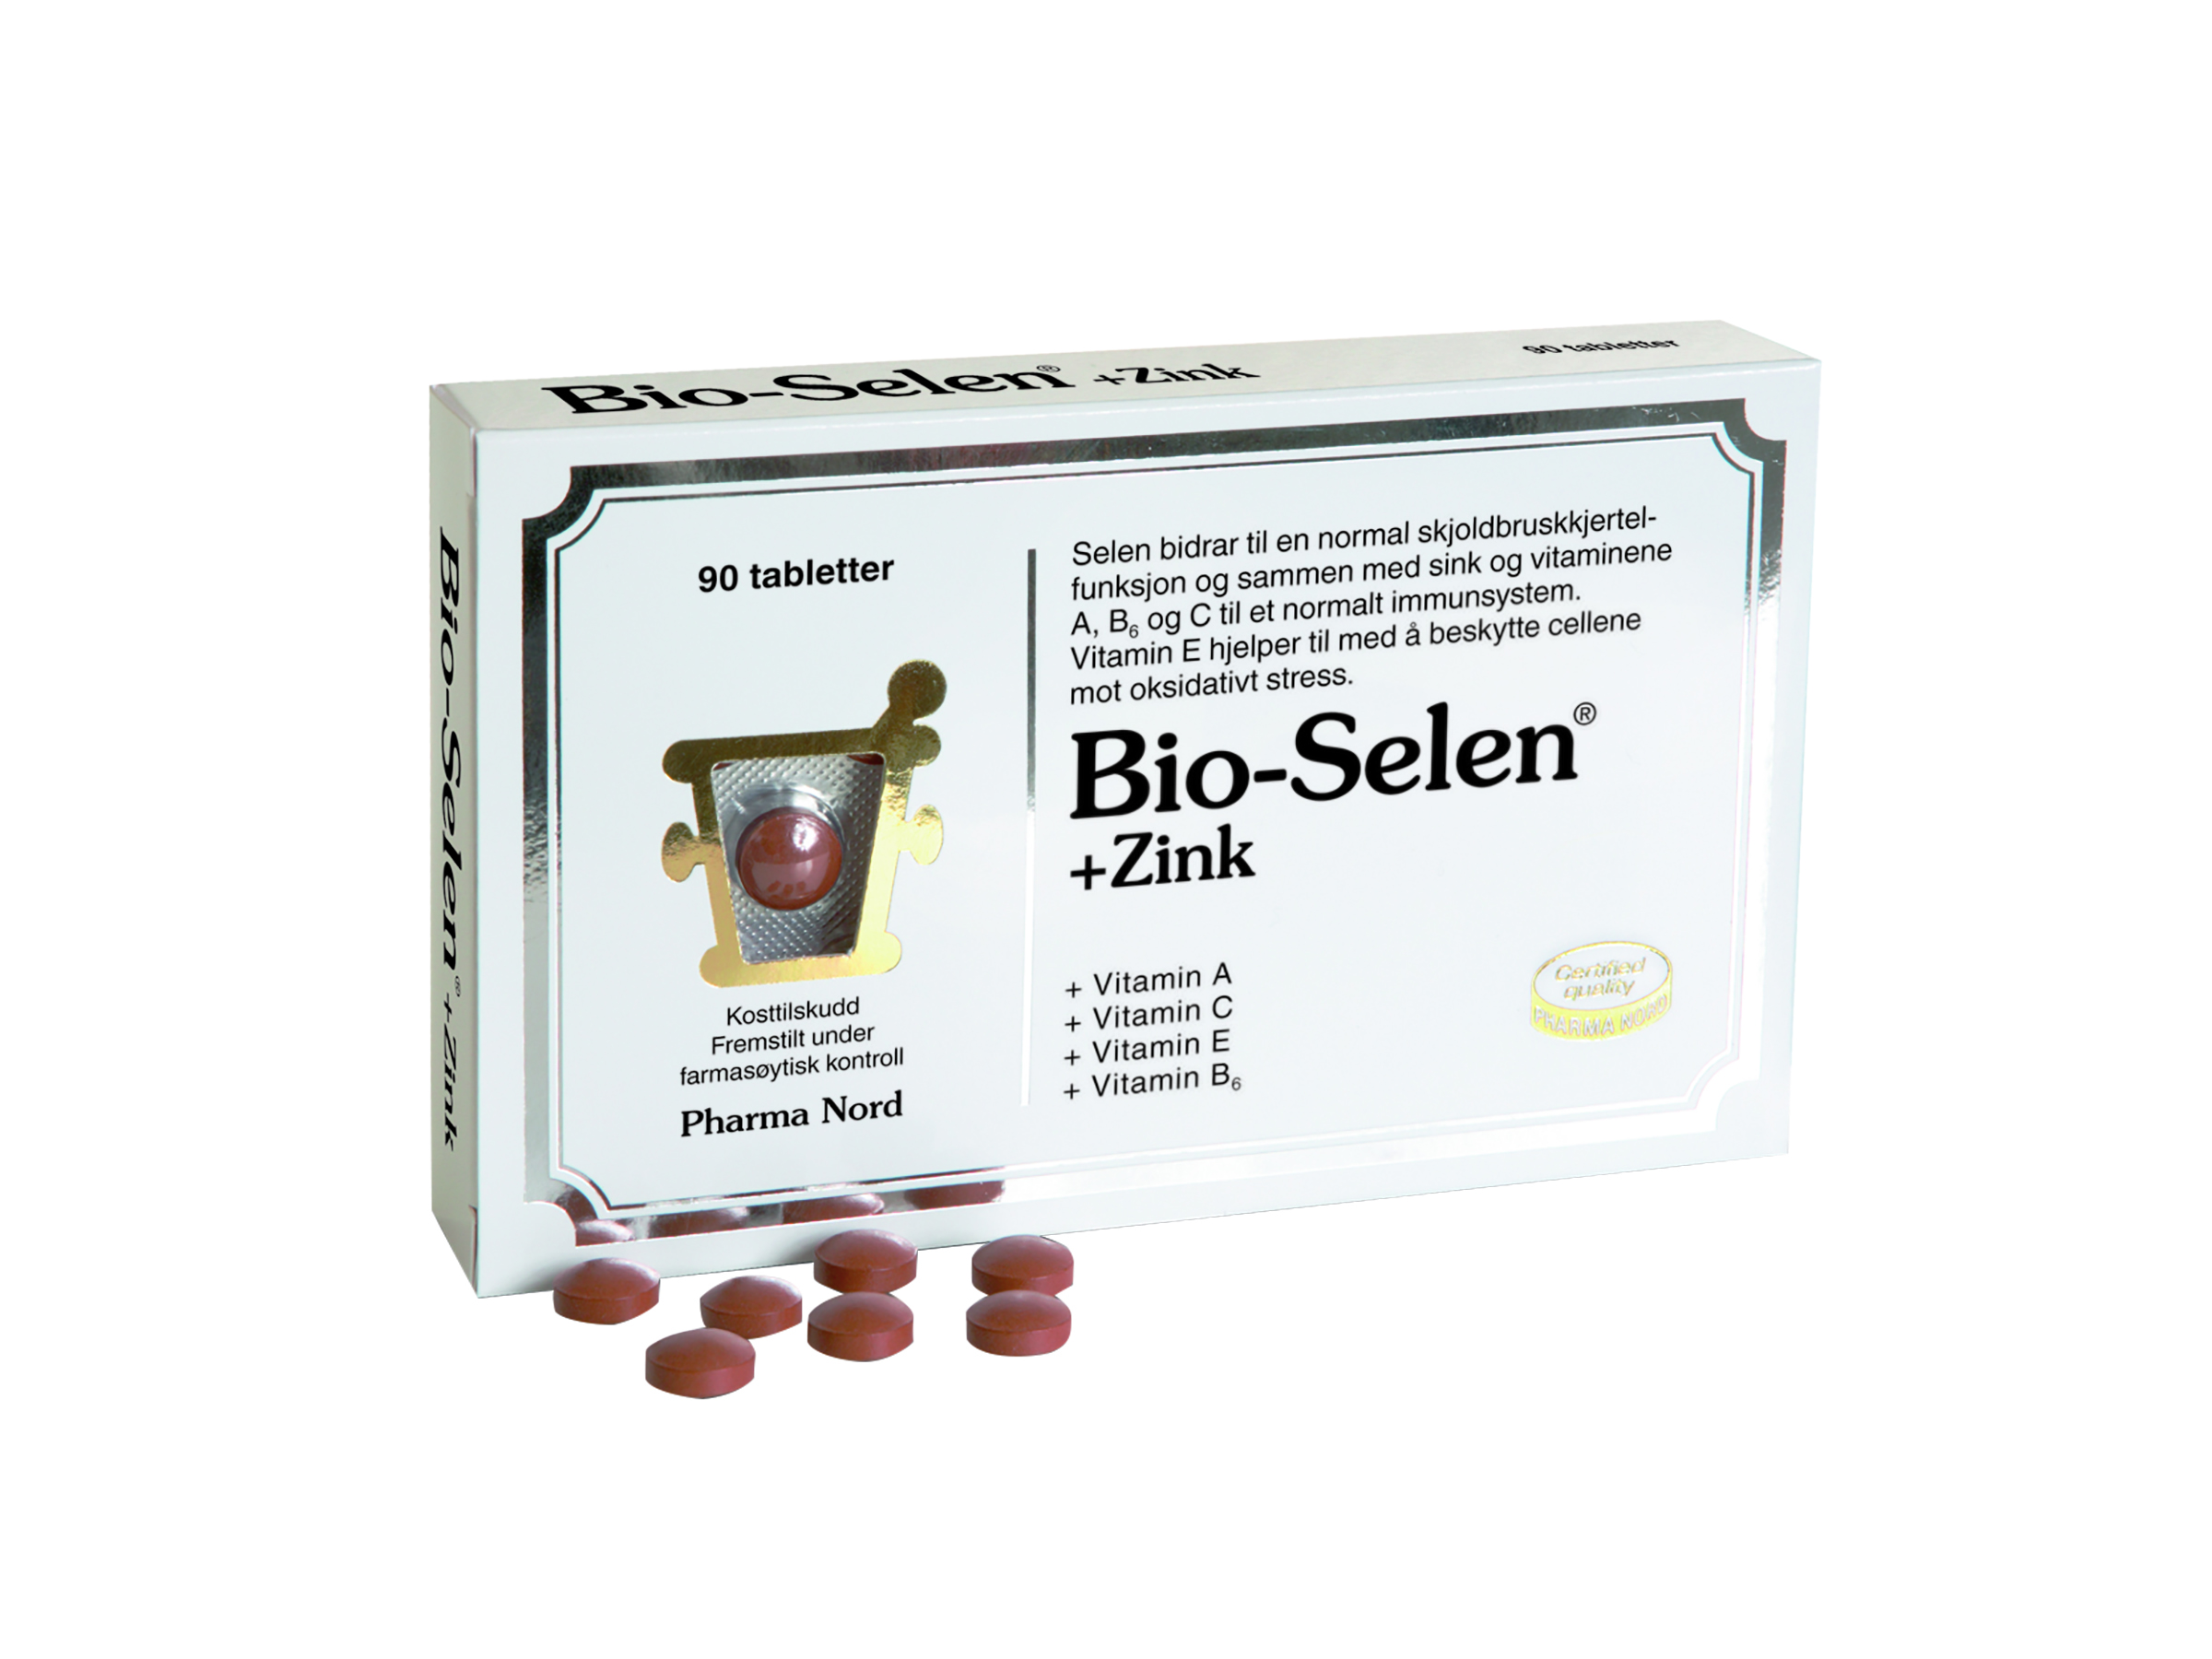 Bio-selen+sink, 90 tabletter